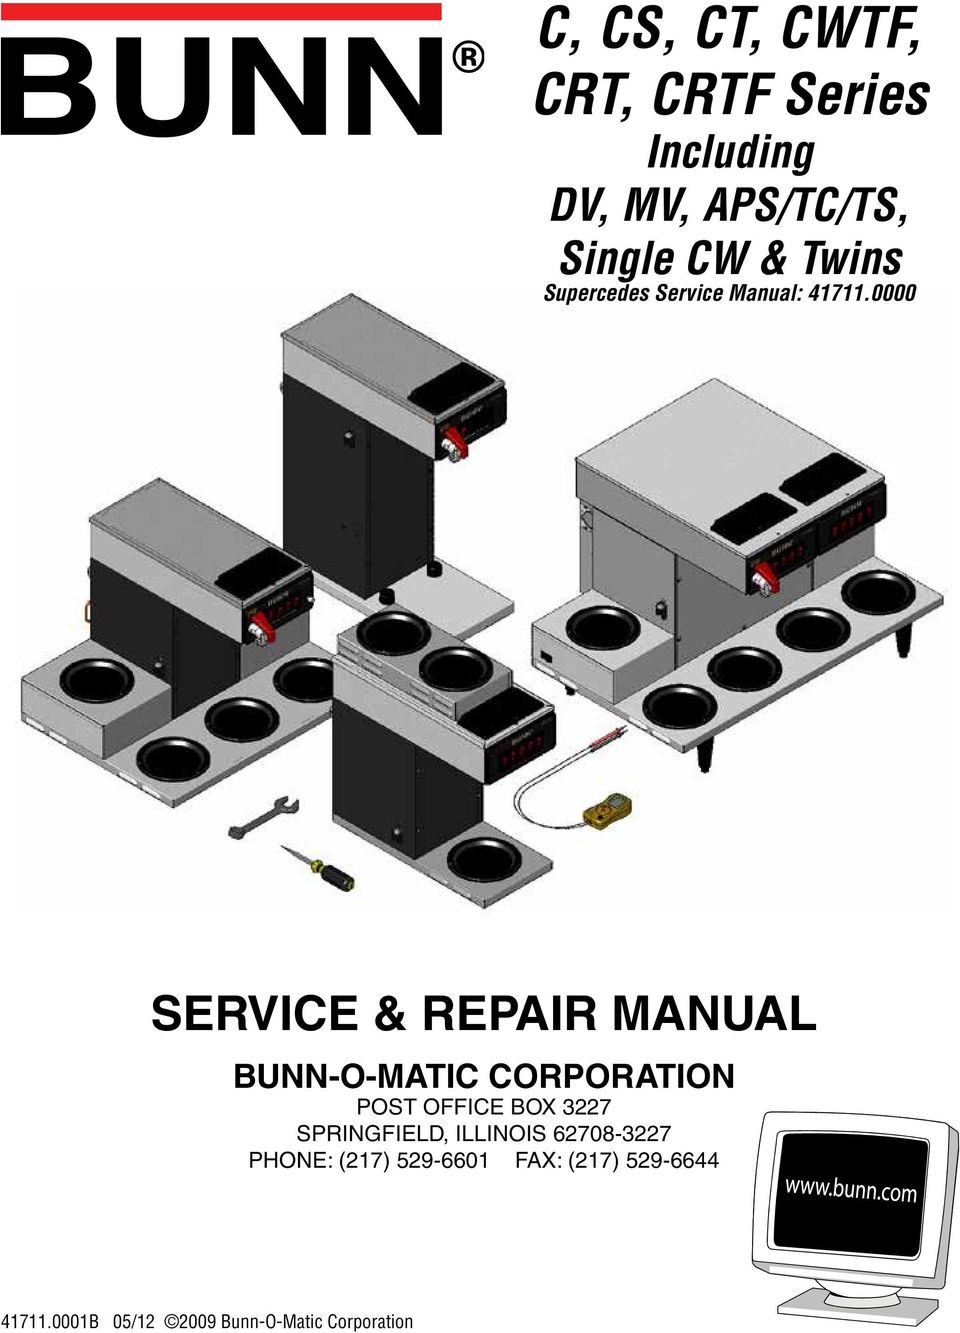 0000 SERVICE & REPAIR MANUAL BUNN-O-MATIC CORPORATION POST OFFICE BOX 3227